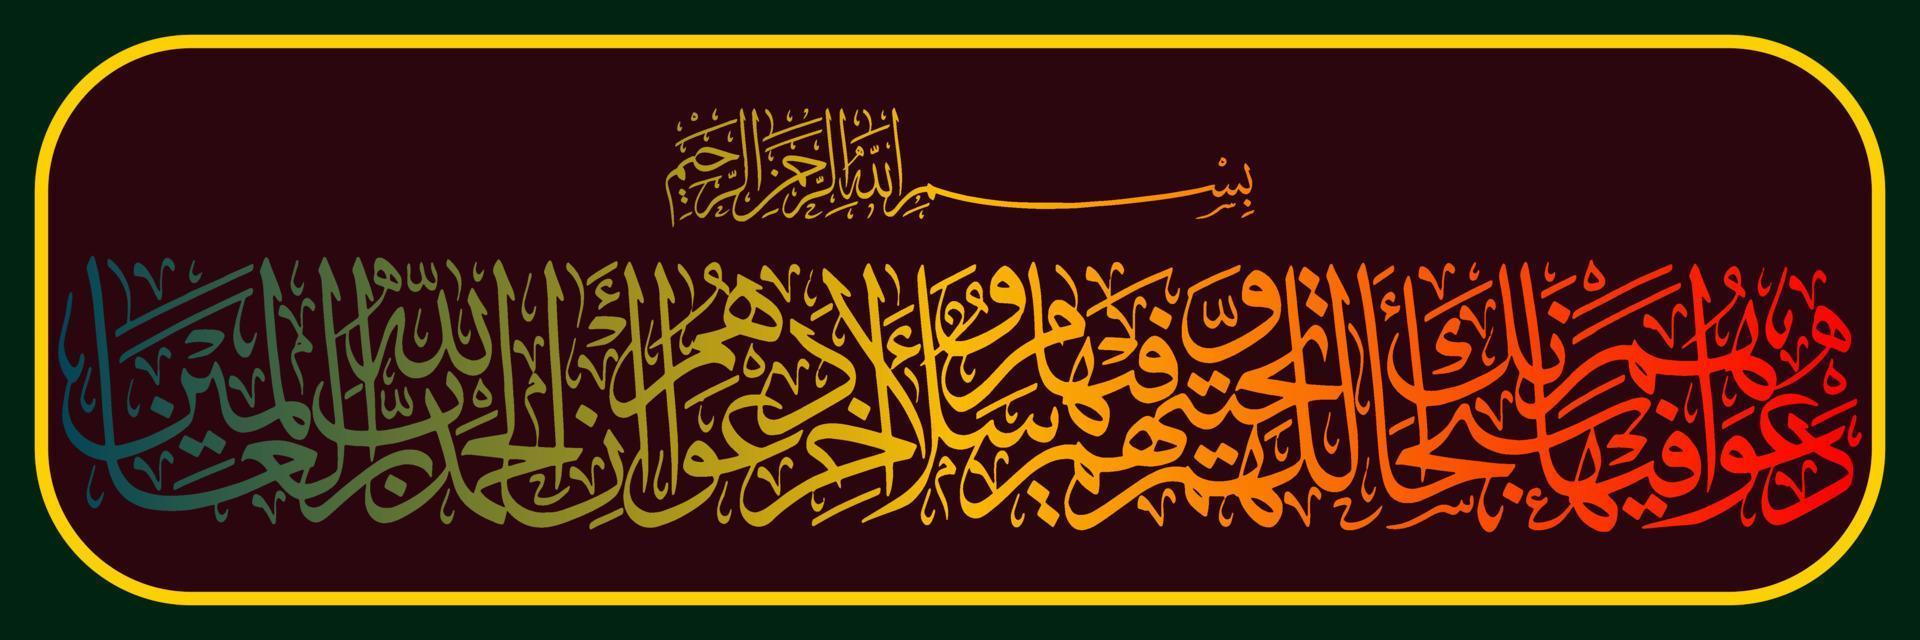 arabicum kalligrafi, quran surah på yunus vers 10, översatt deras bön i den är, välsignad vara du, o vår herre, och deras hälsning är, fred vara på du. och de stängning av deras bön är, vektor